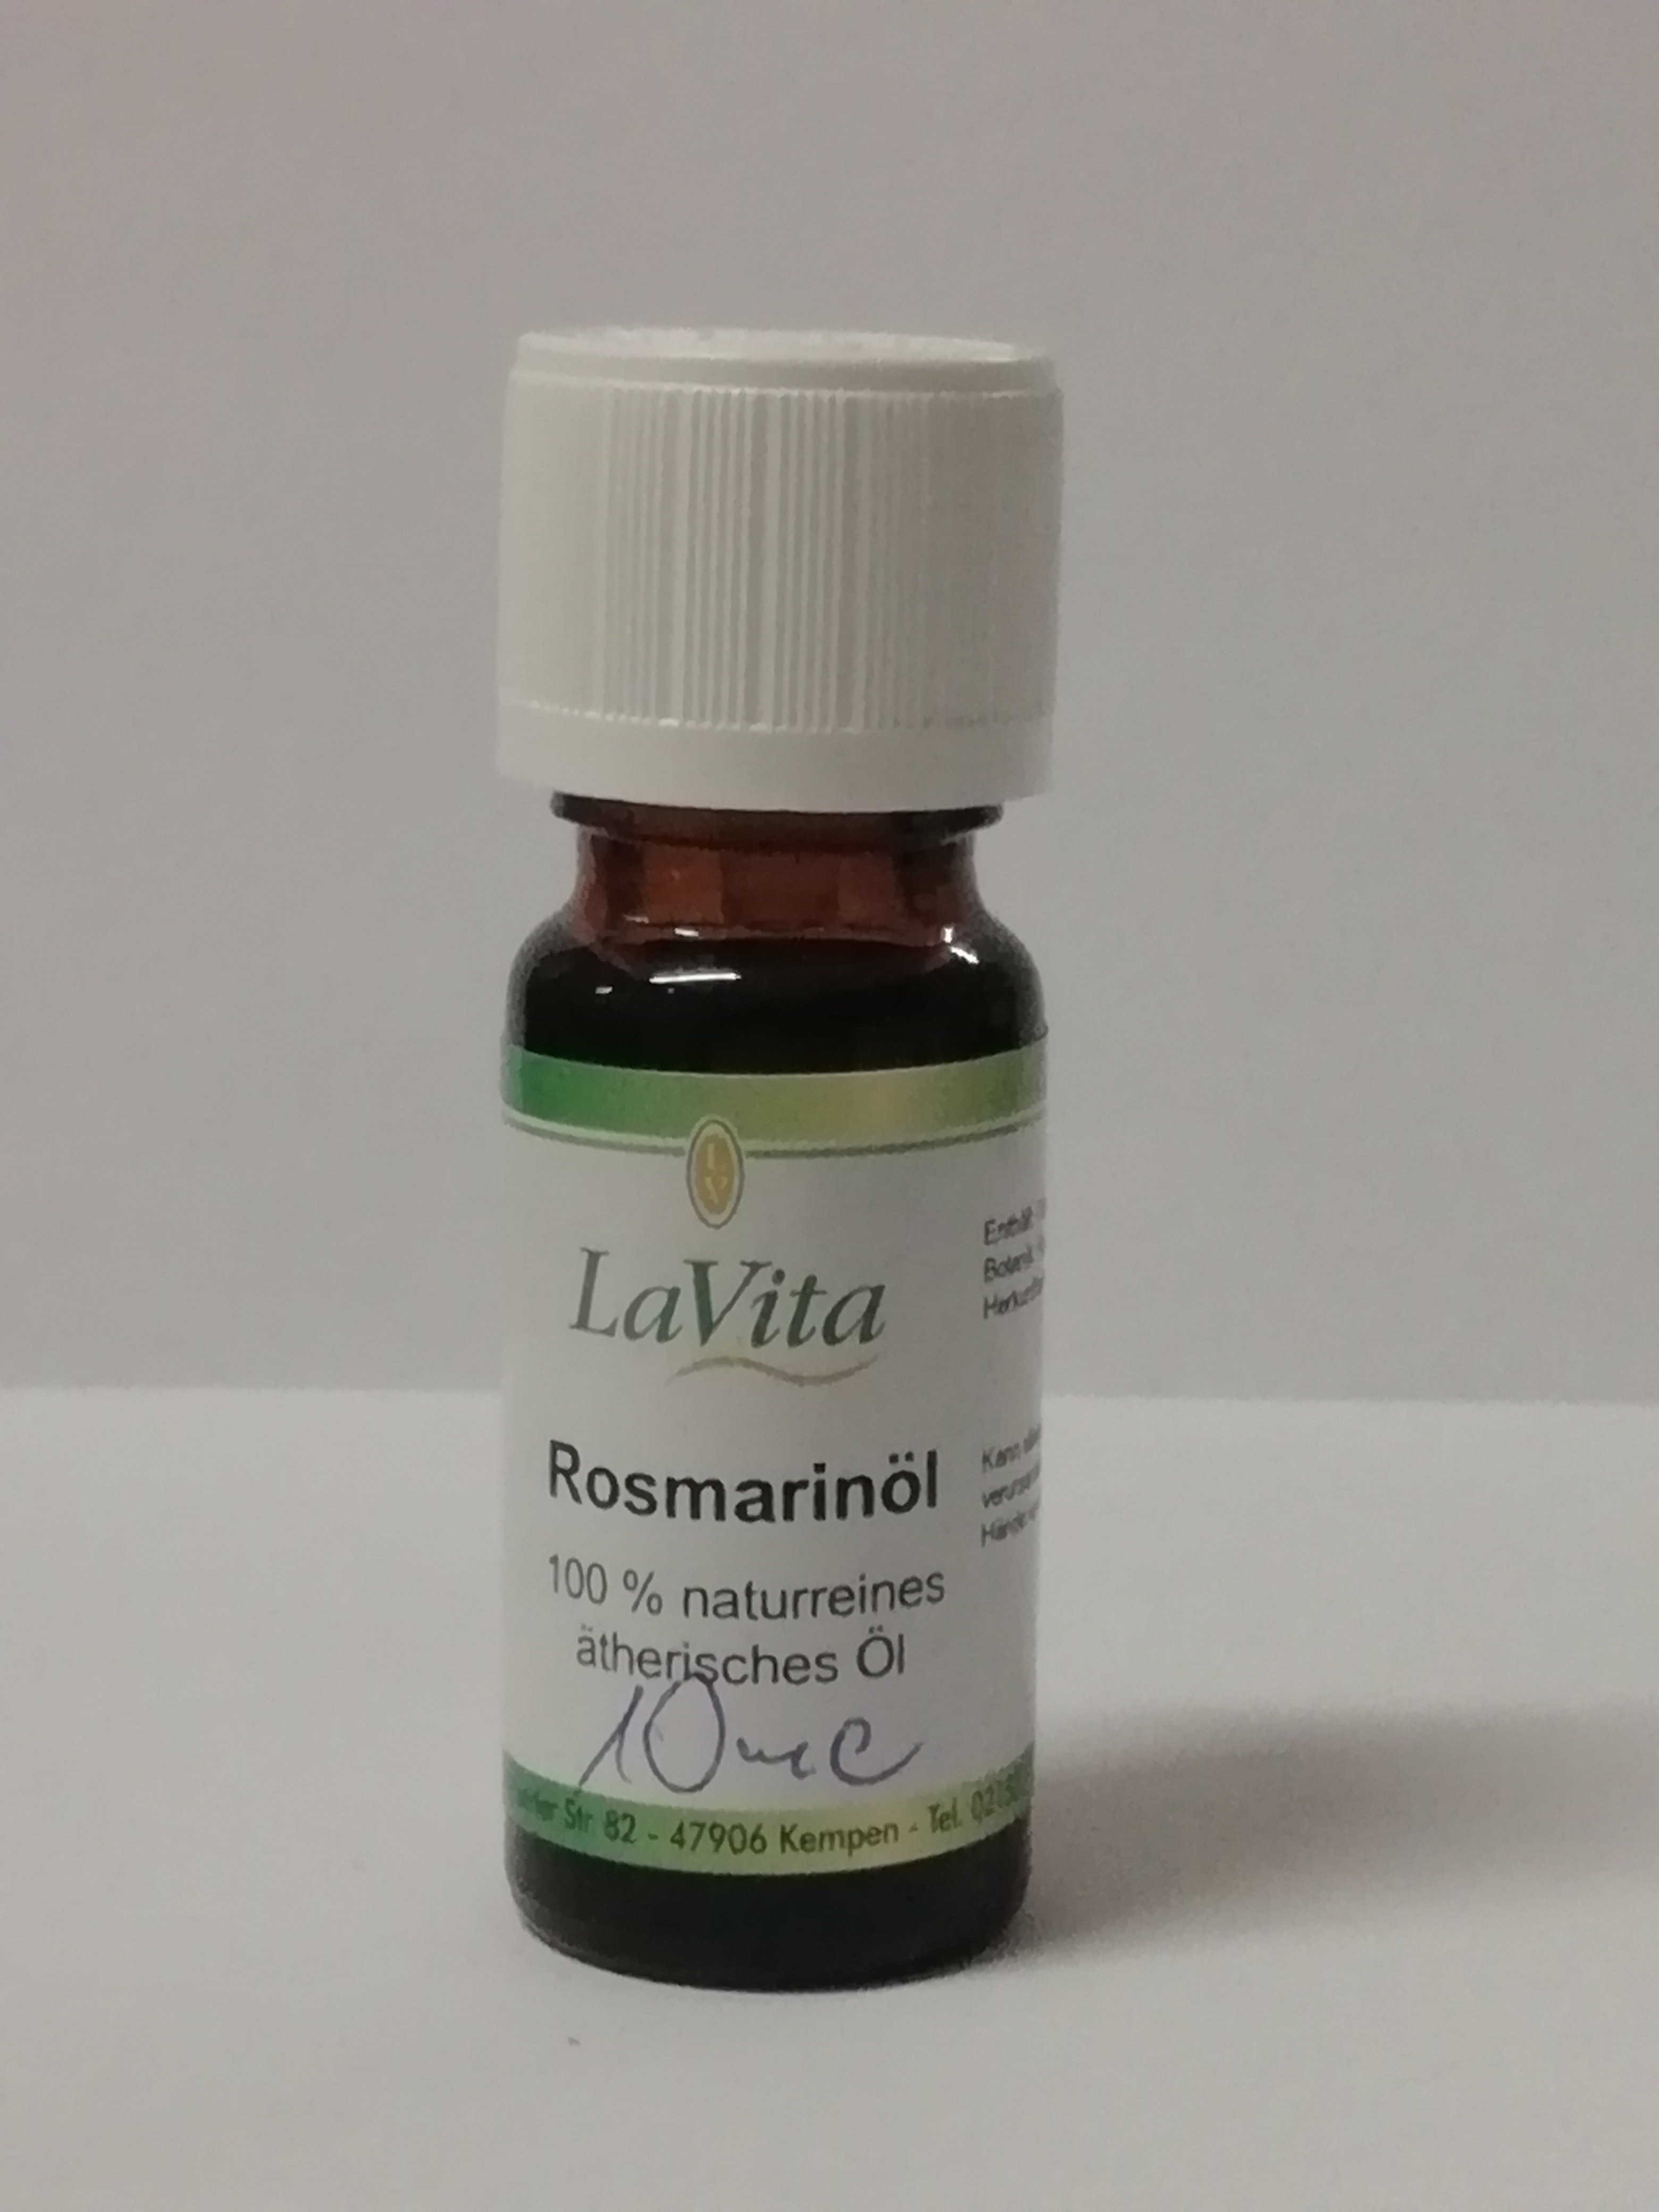 LaVita Rosmarinöl 100% naturreines ätherisches Öl